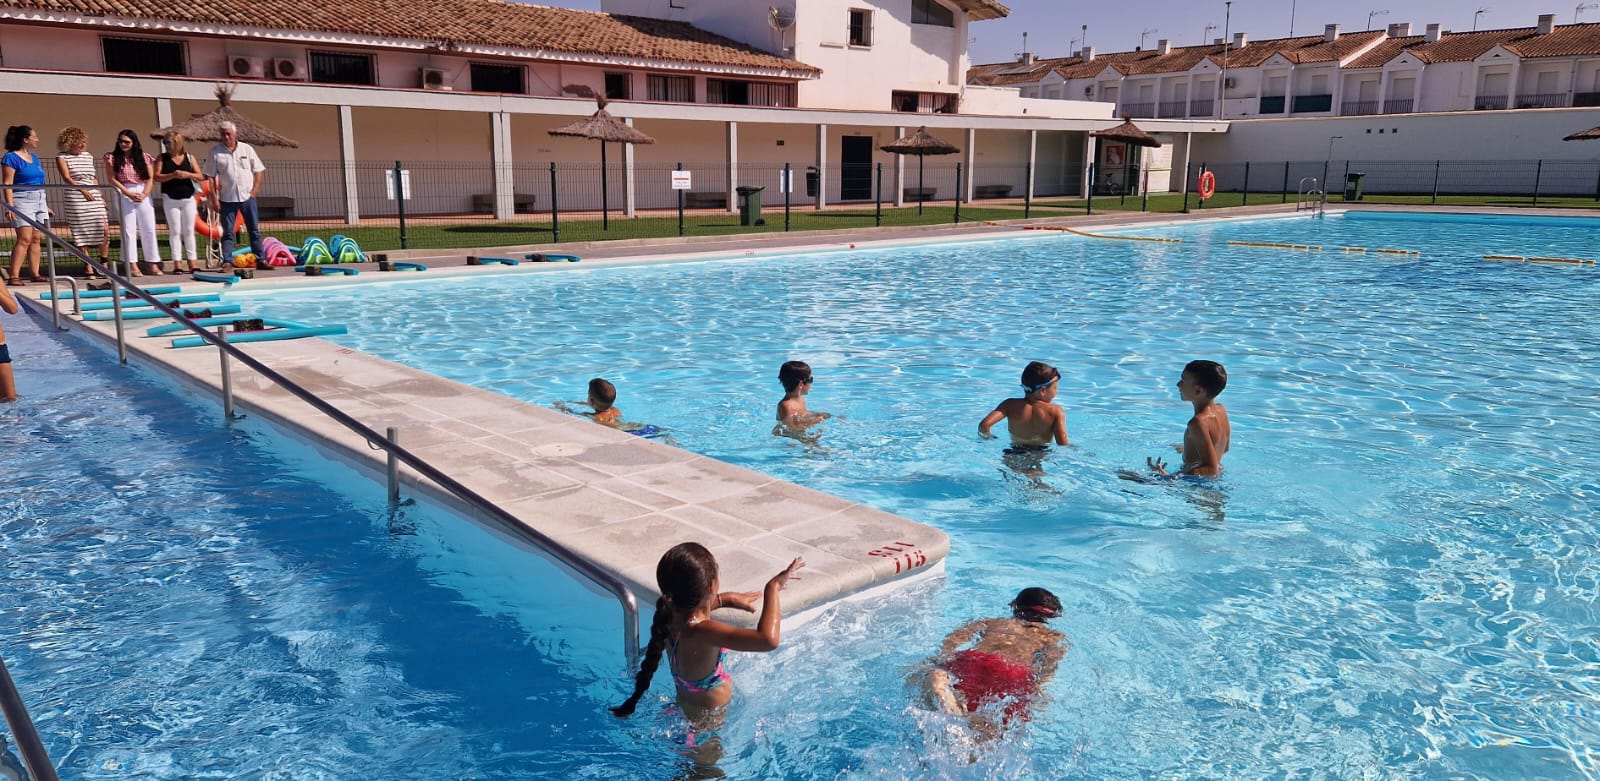 270 menores disfrutan de los servicios del campamento municipal de verano en Castellar.